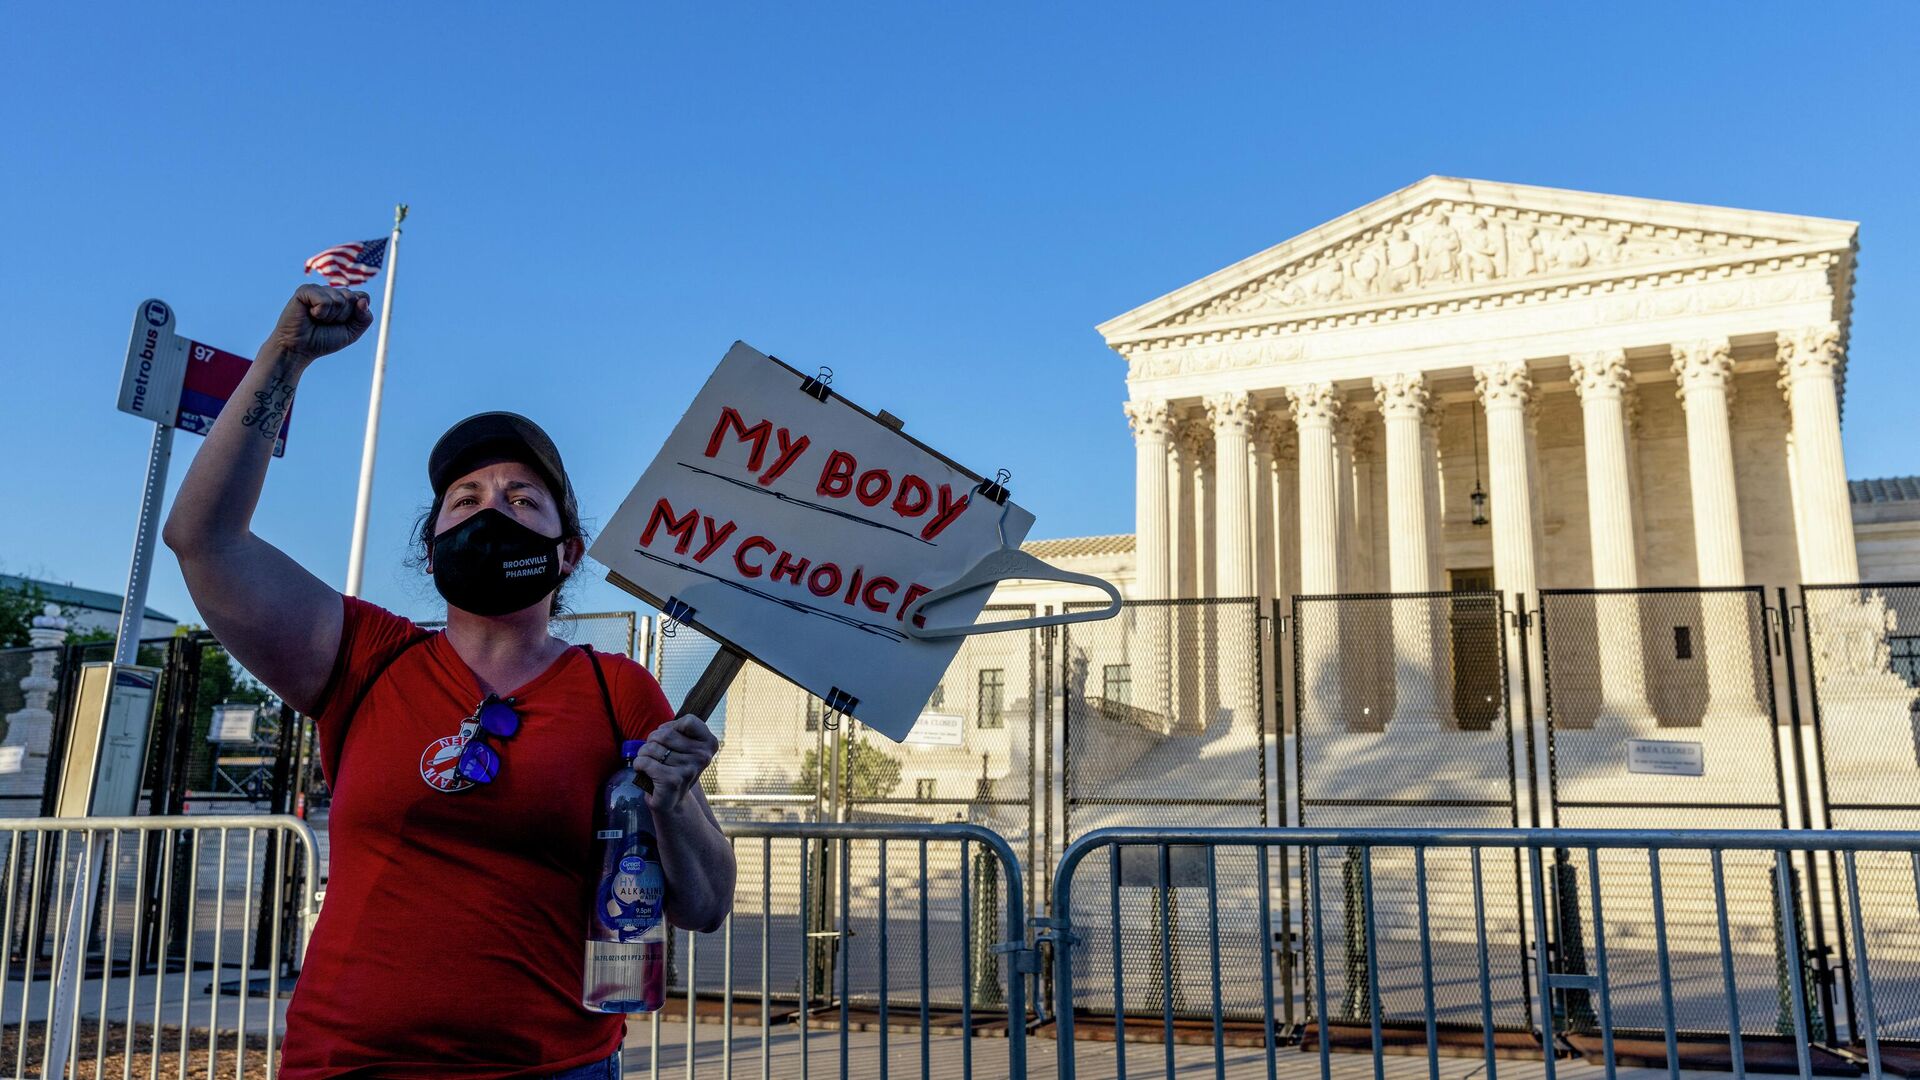 Демонстрация за право на аборт перед зданием Верховного суда США в Вашингтоне, 10 мая 2022 - РИА Новости, 1920, 12.05.2022